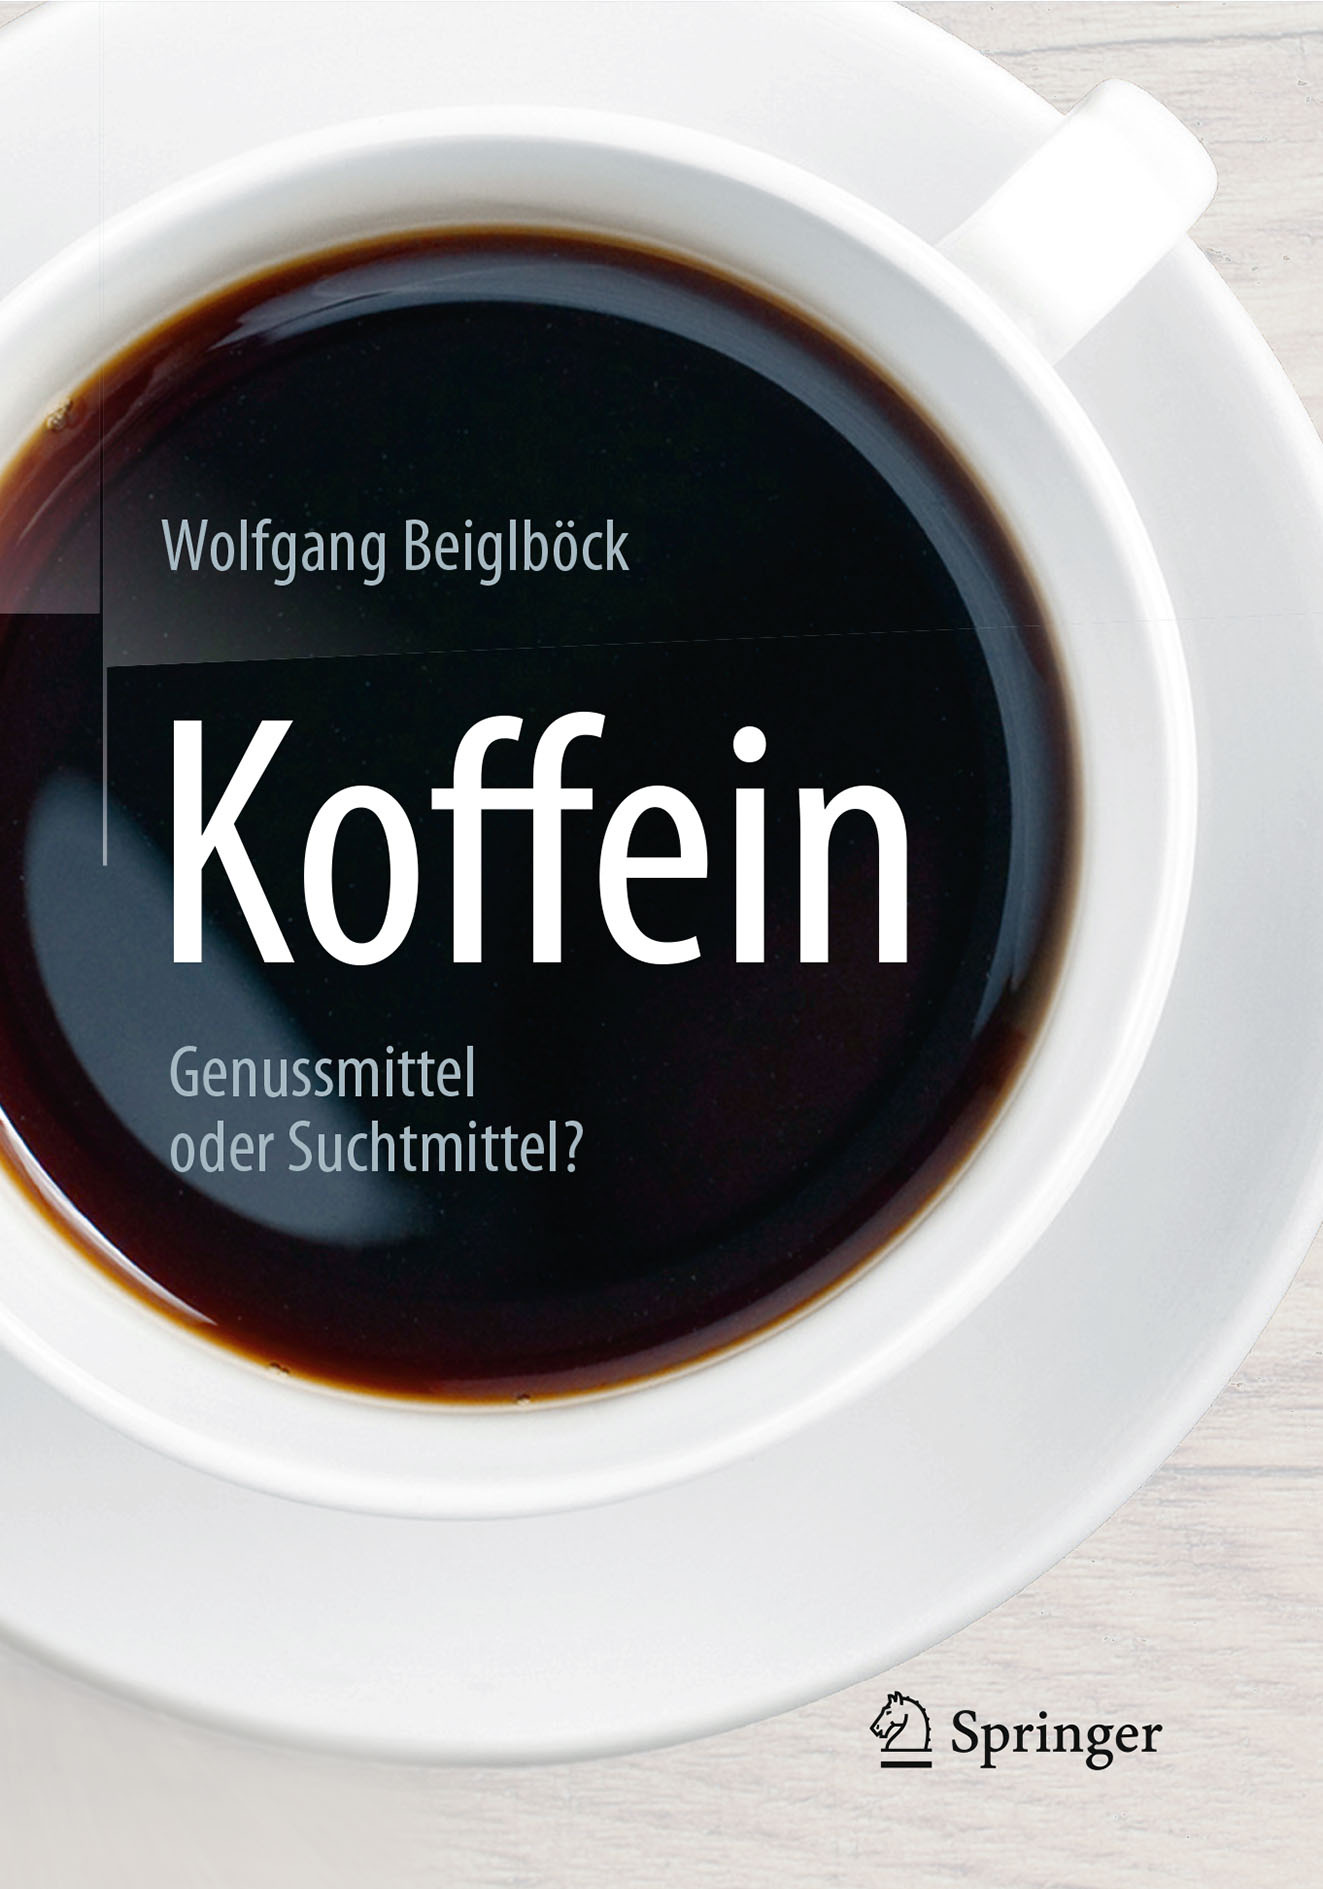 Beiglböck, Wolfgang - Koffein, ebook